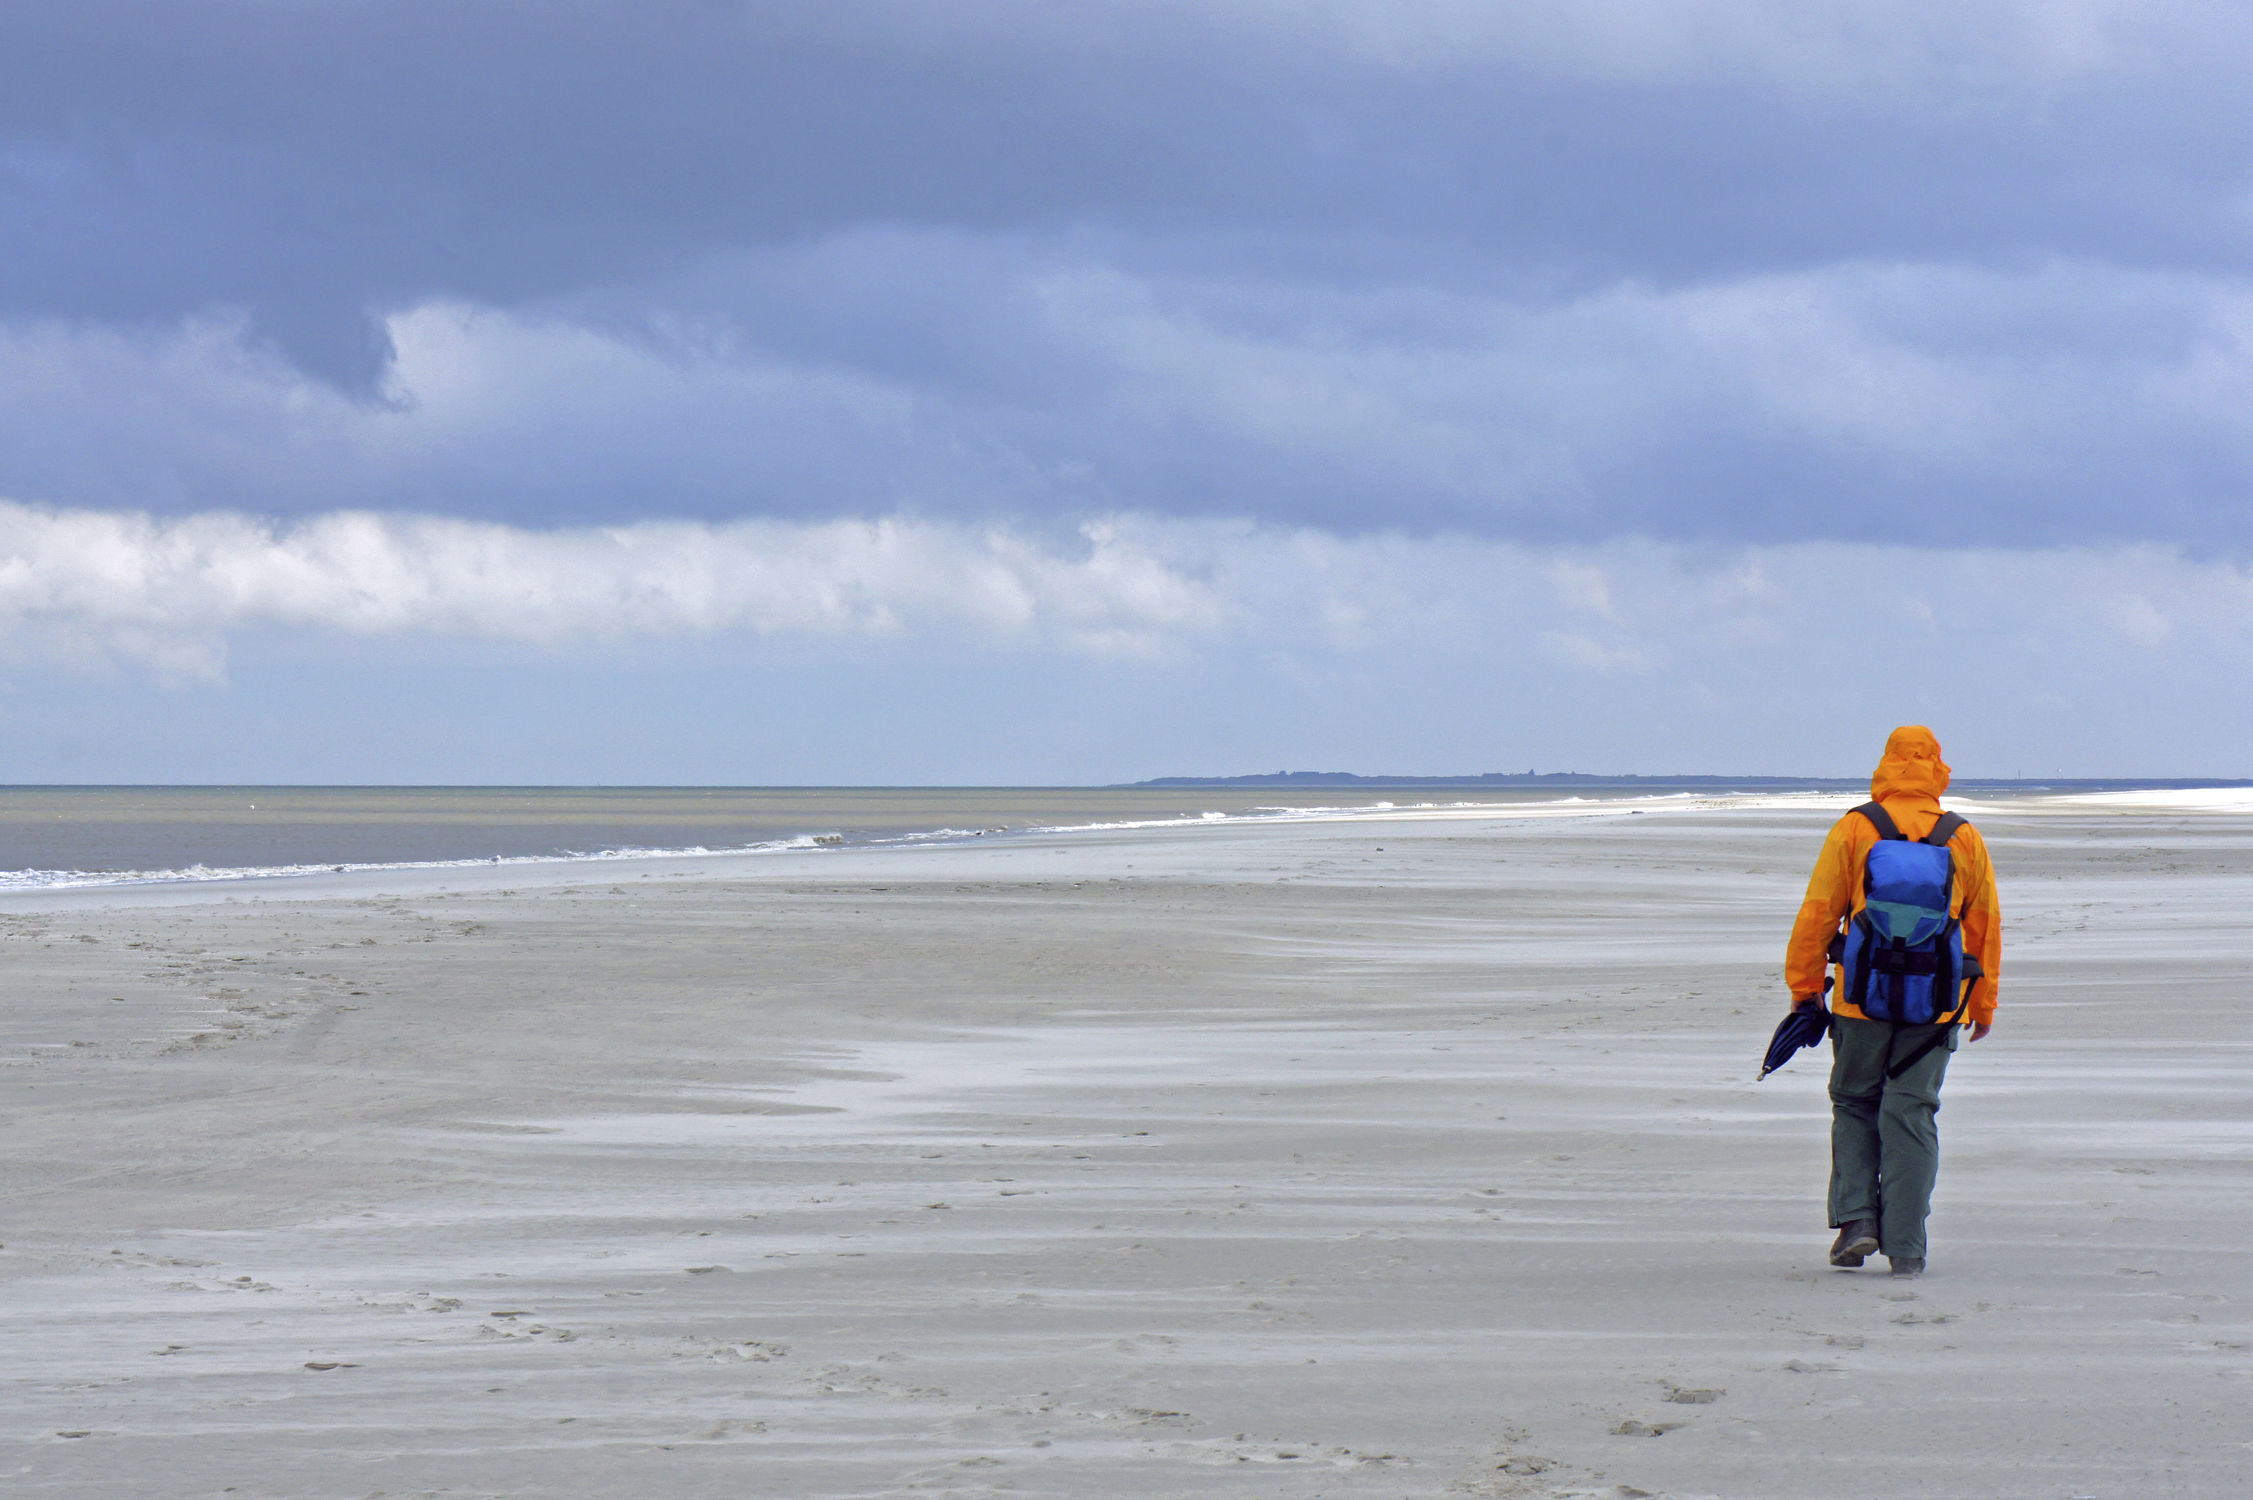 Bild mit Sand, Strand, Meer, Nordsee, See, Gewitter, Mensch, Person, Personen, Langeoog